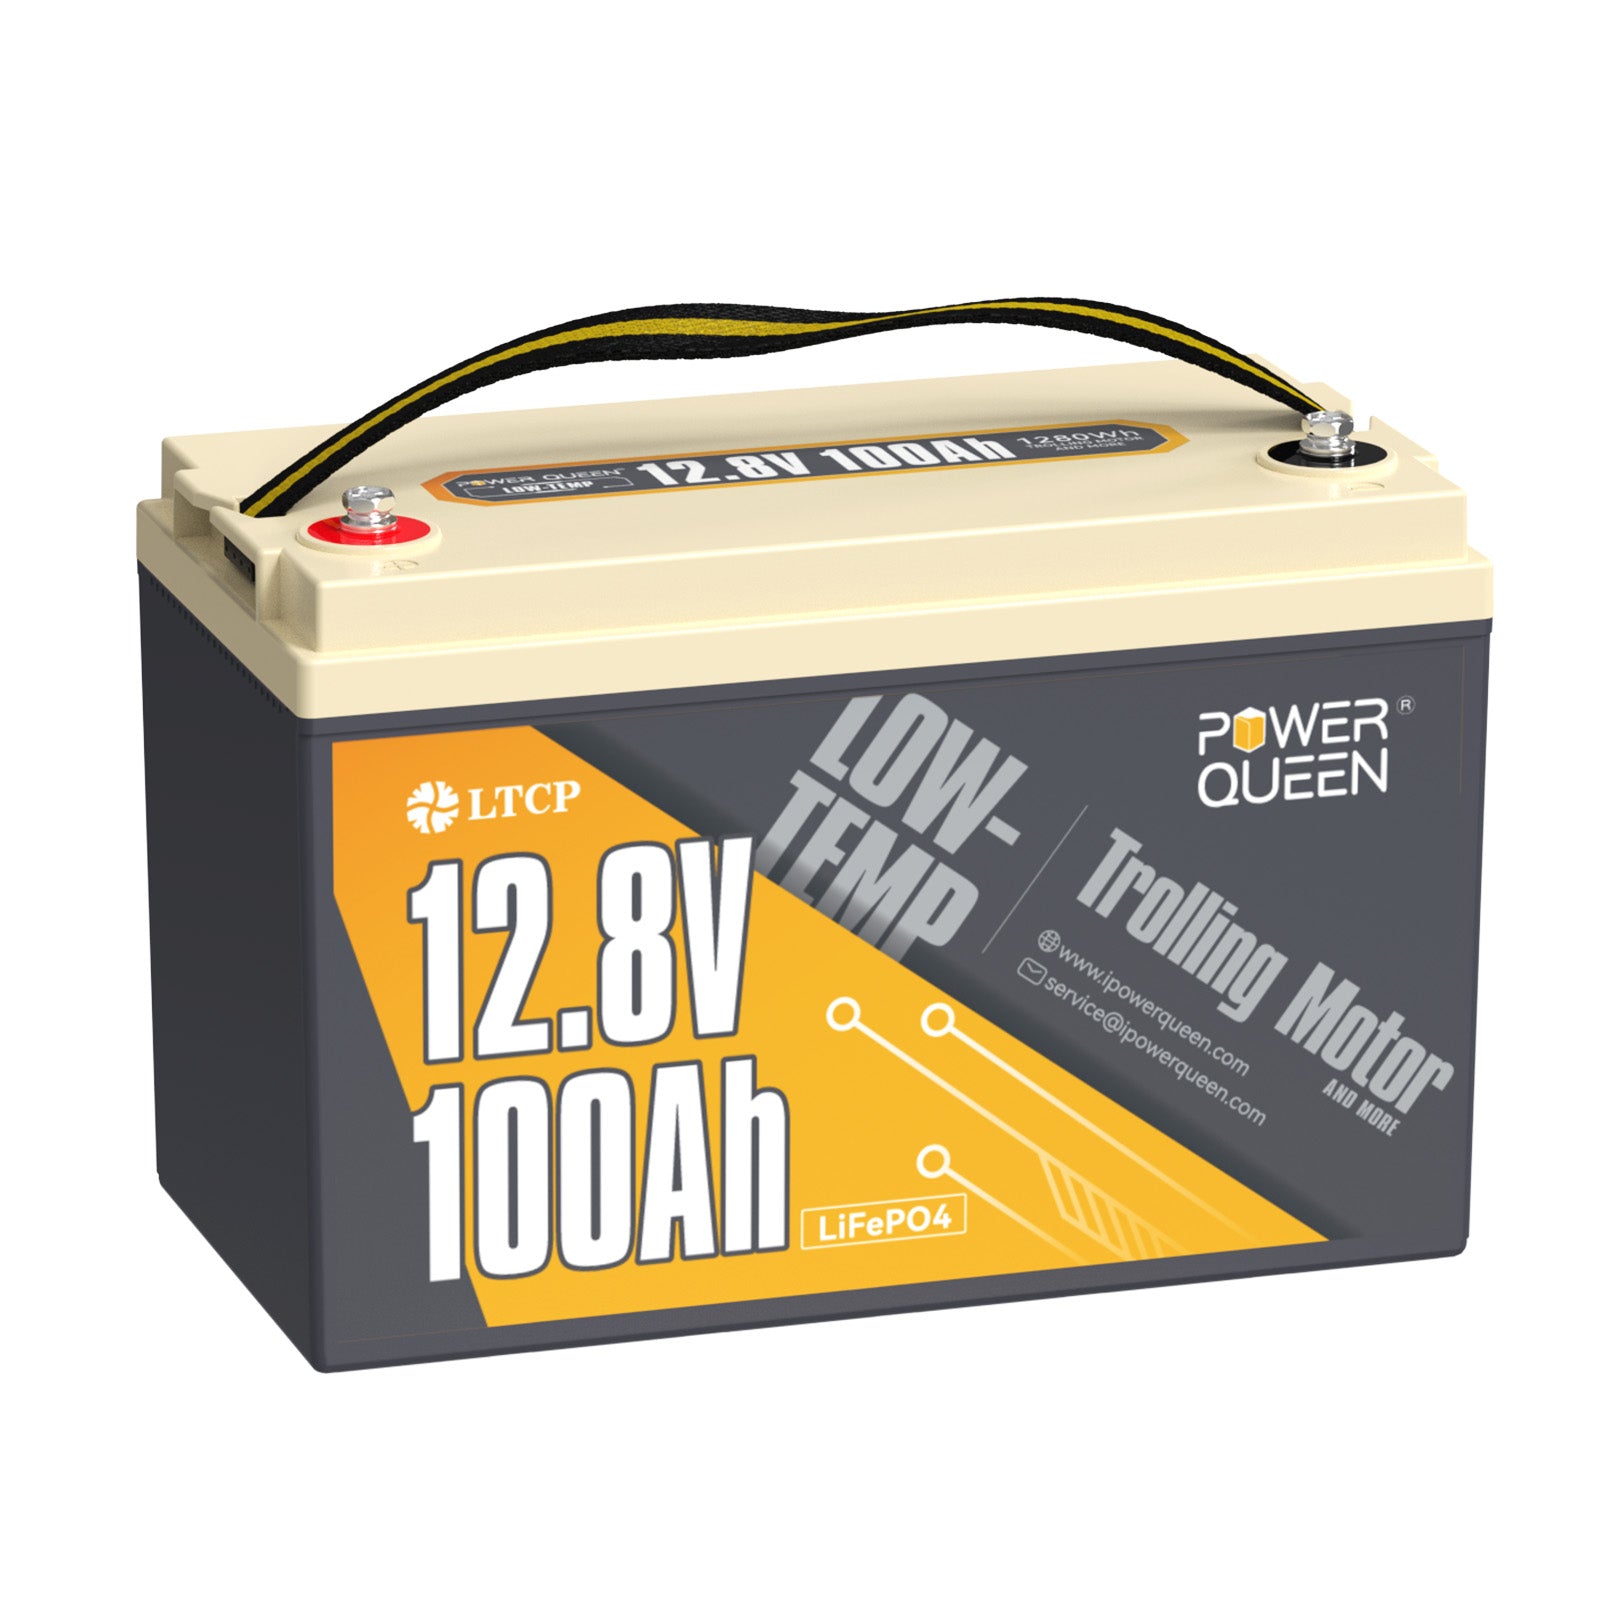 Power Queen 12.8V 100Ah batería LiFePO4 de baja temperatura, batería de motor de pesca con curricán